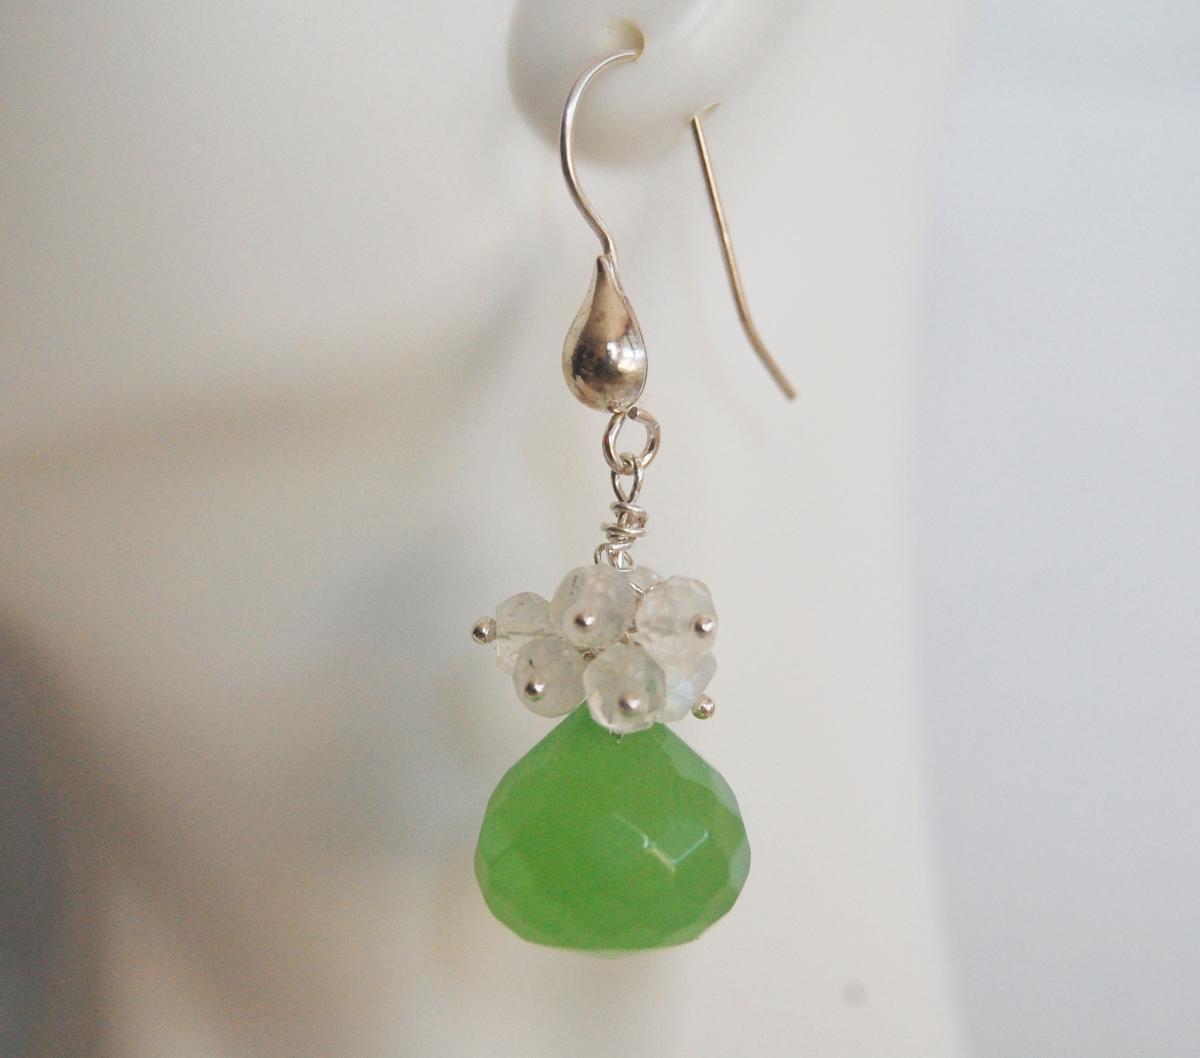 Gemstone Cluster Dangle Earrings - Aaa Green Quartz And Moonstone Cluster Dangle Earrings